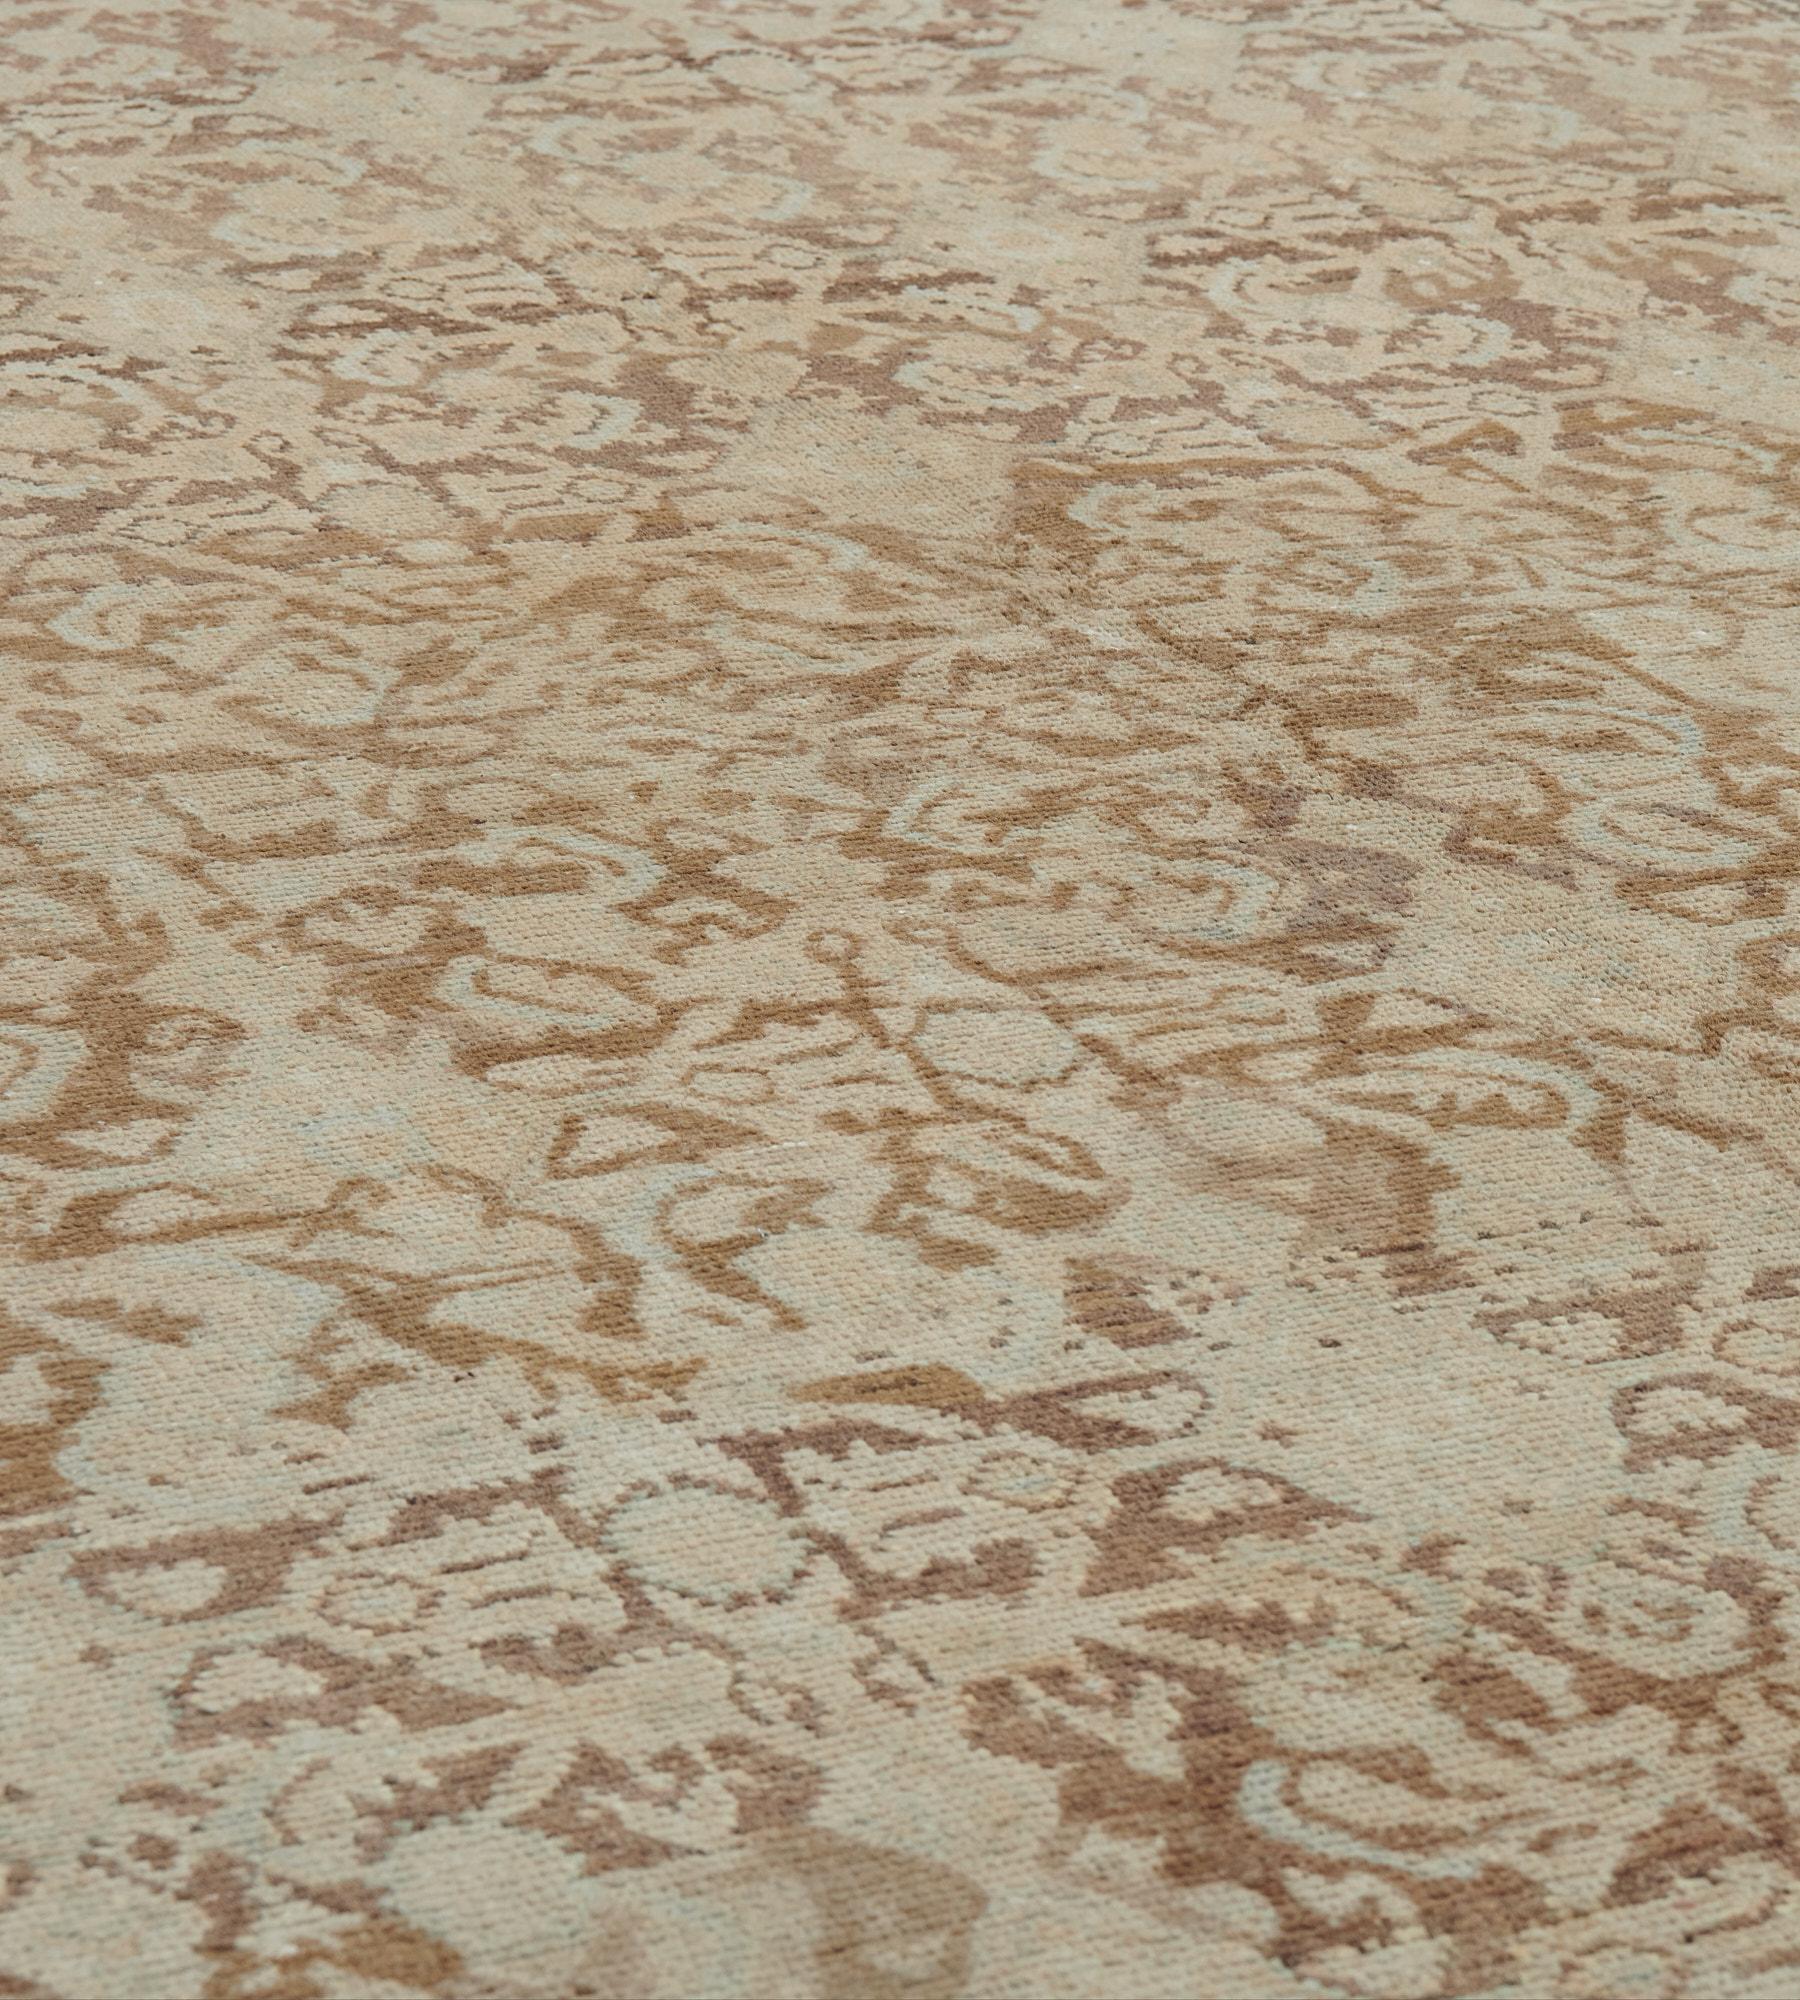 Ce tapis ancien de Malayer a un champ brun renard avec un motif herati audacieux ivoire et gris tendre, dans une bordure ivoire de fleurs et de feuilles angulaires entre des bandes de fleurs et de rubans marron taupe, avec une bande extérieure